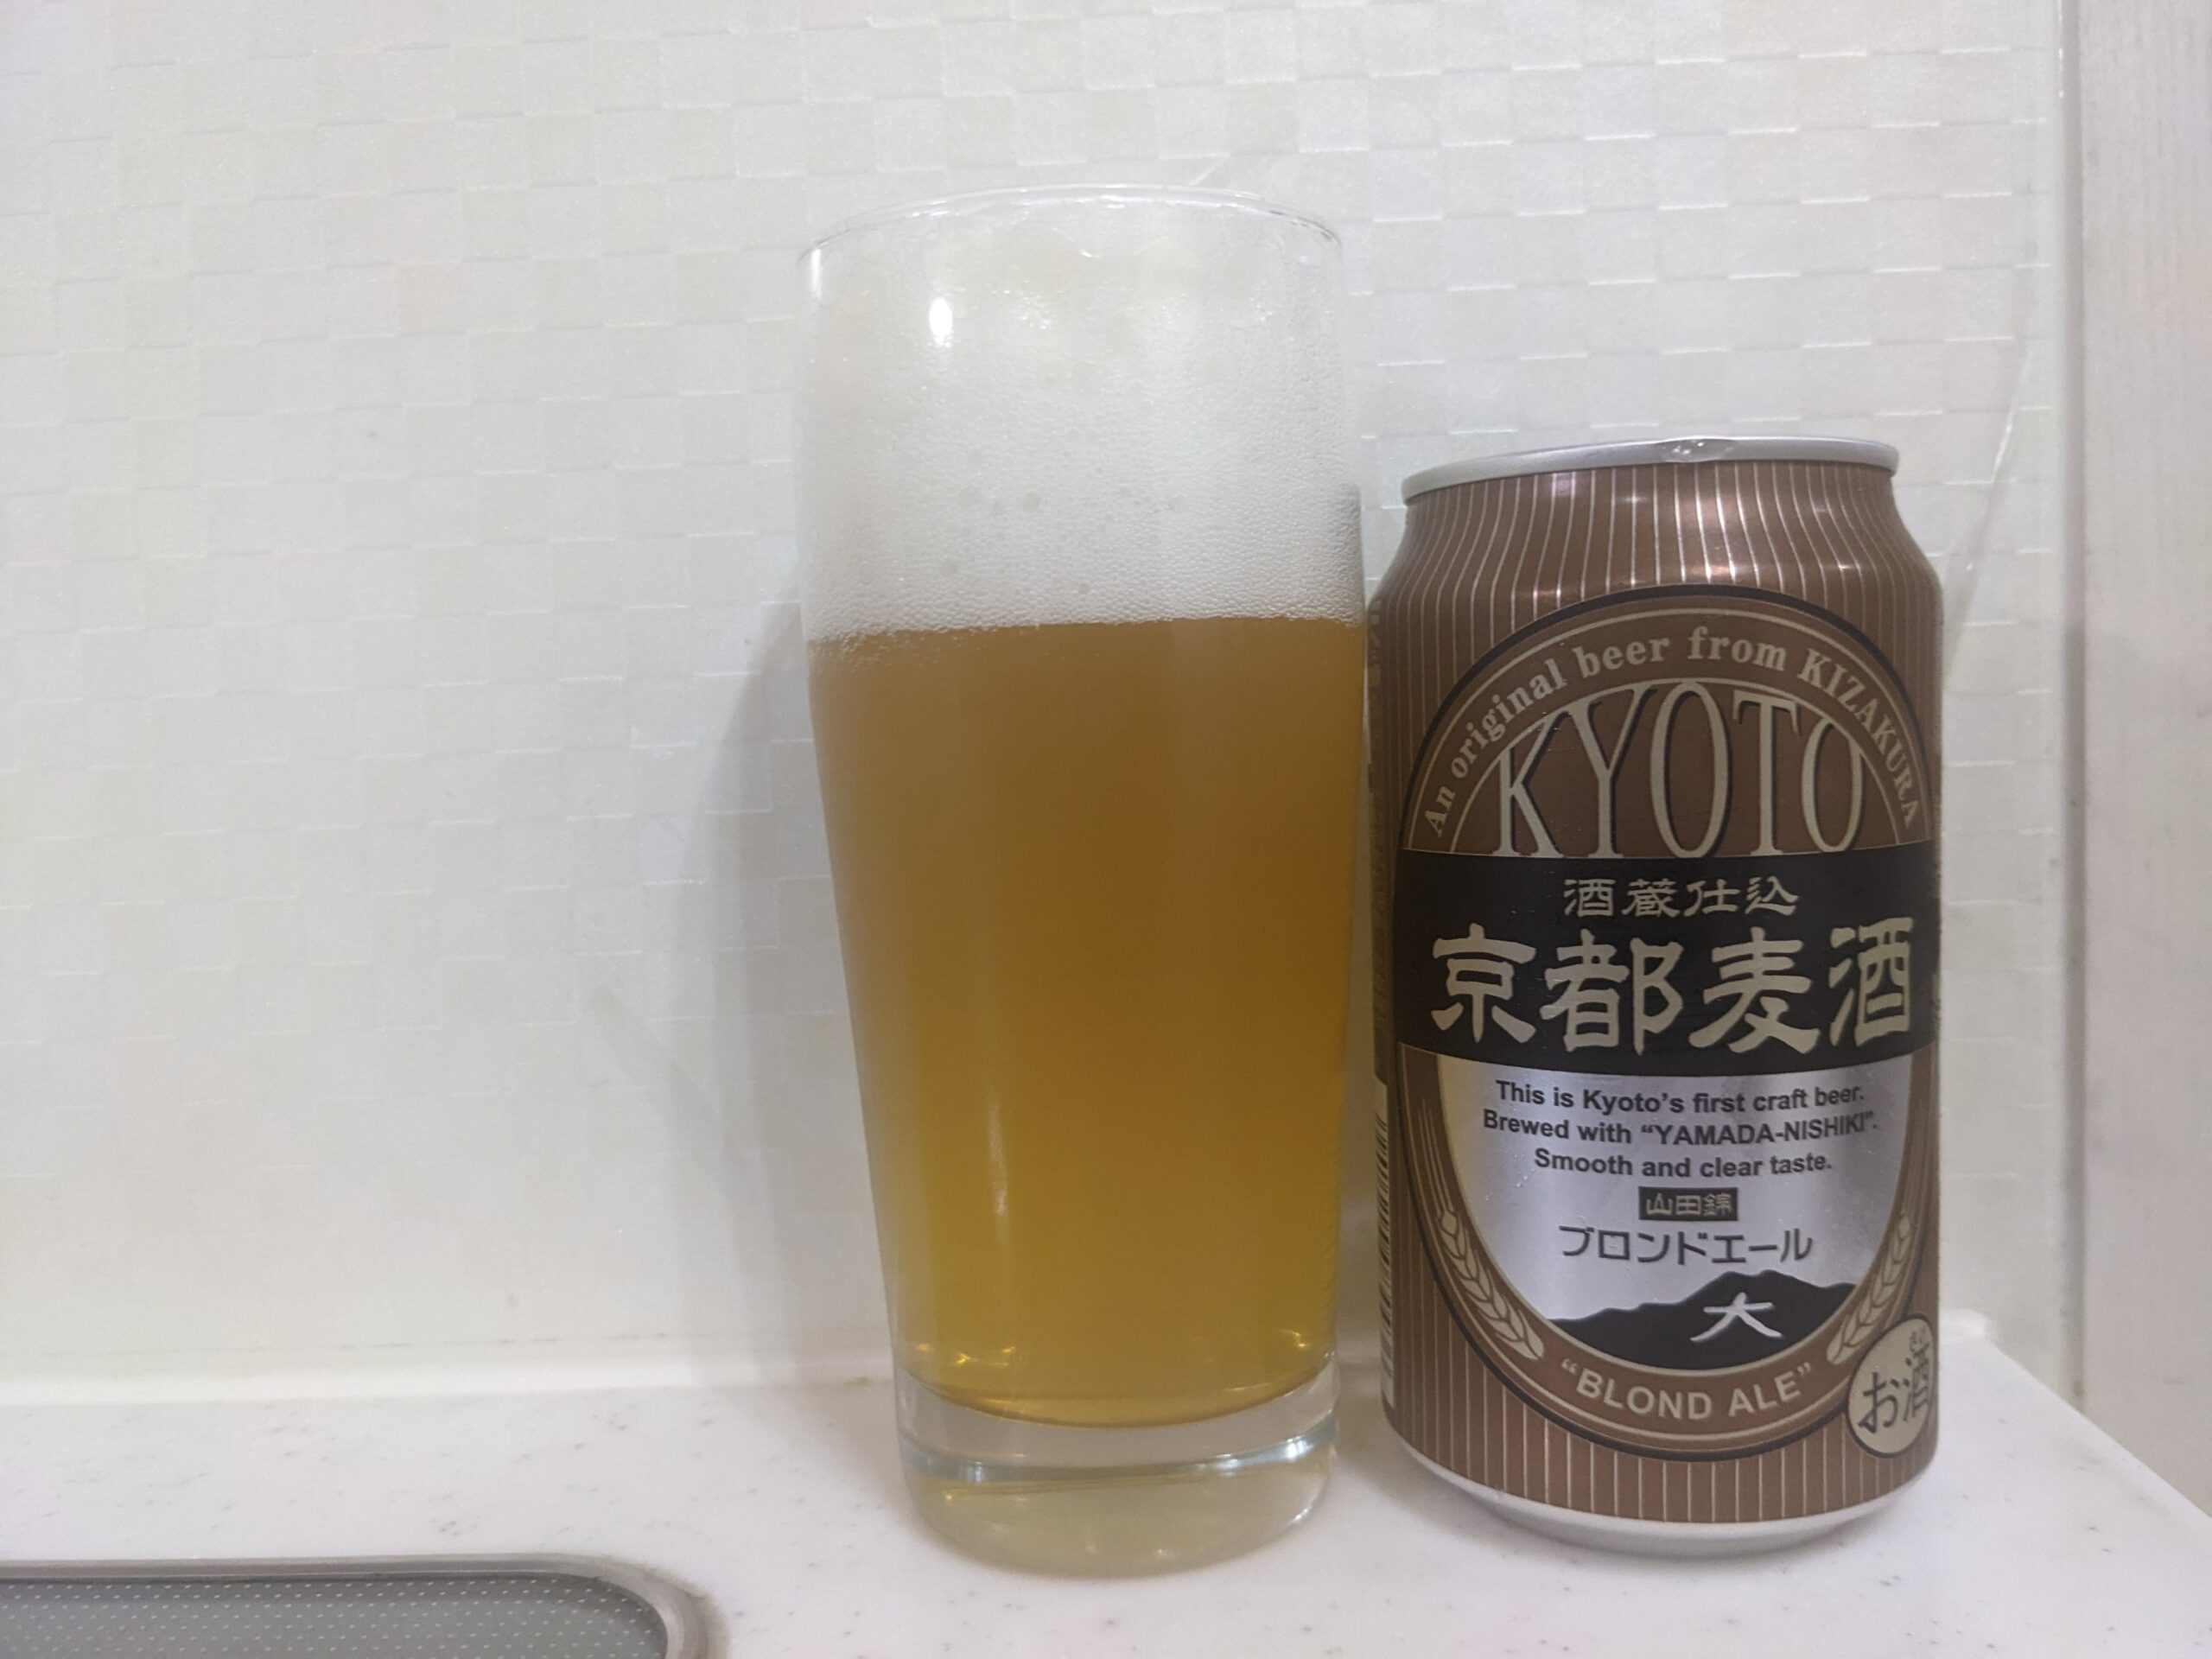 「京都麦酒ブロンドエール」が注がれたグラスとその缶